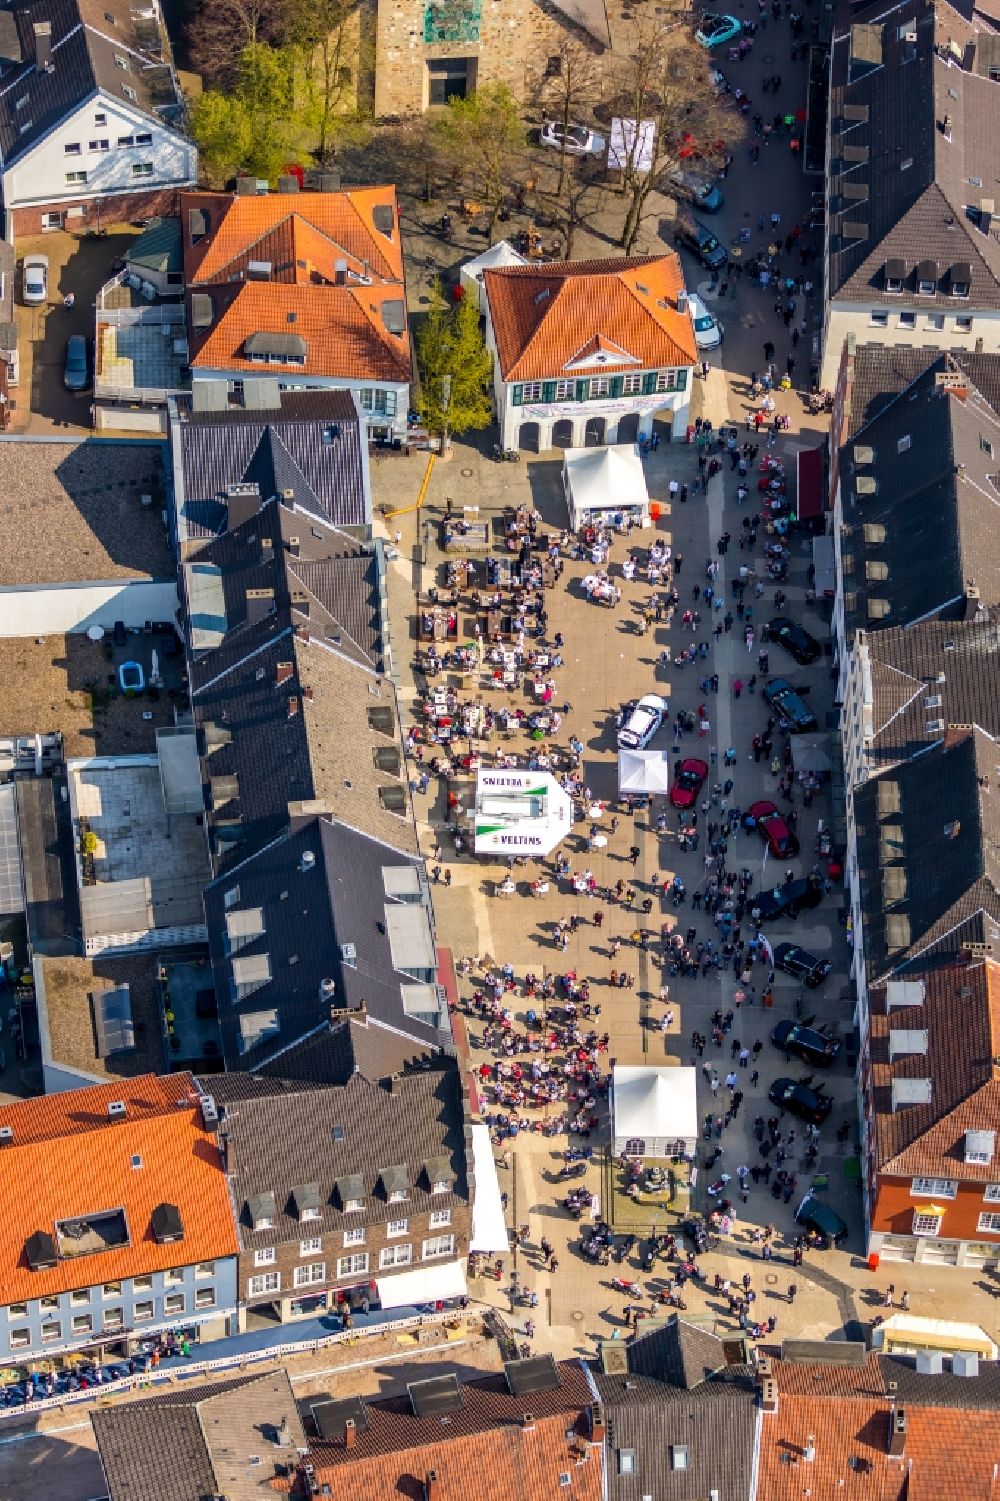 Luftbild Dorsten - Verkaufs- und Imbißstände und Handelsbuden auf dem Markt in Dorsten im Bundesland Nordrhein-Westfalen, Deutschland